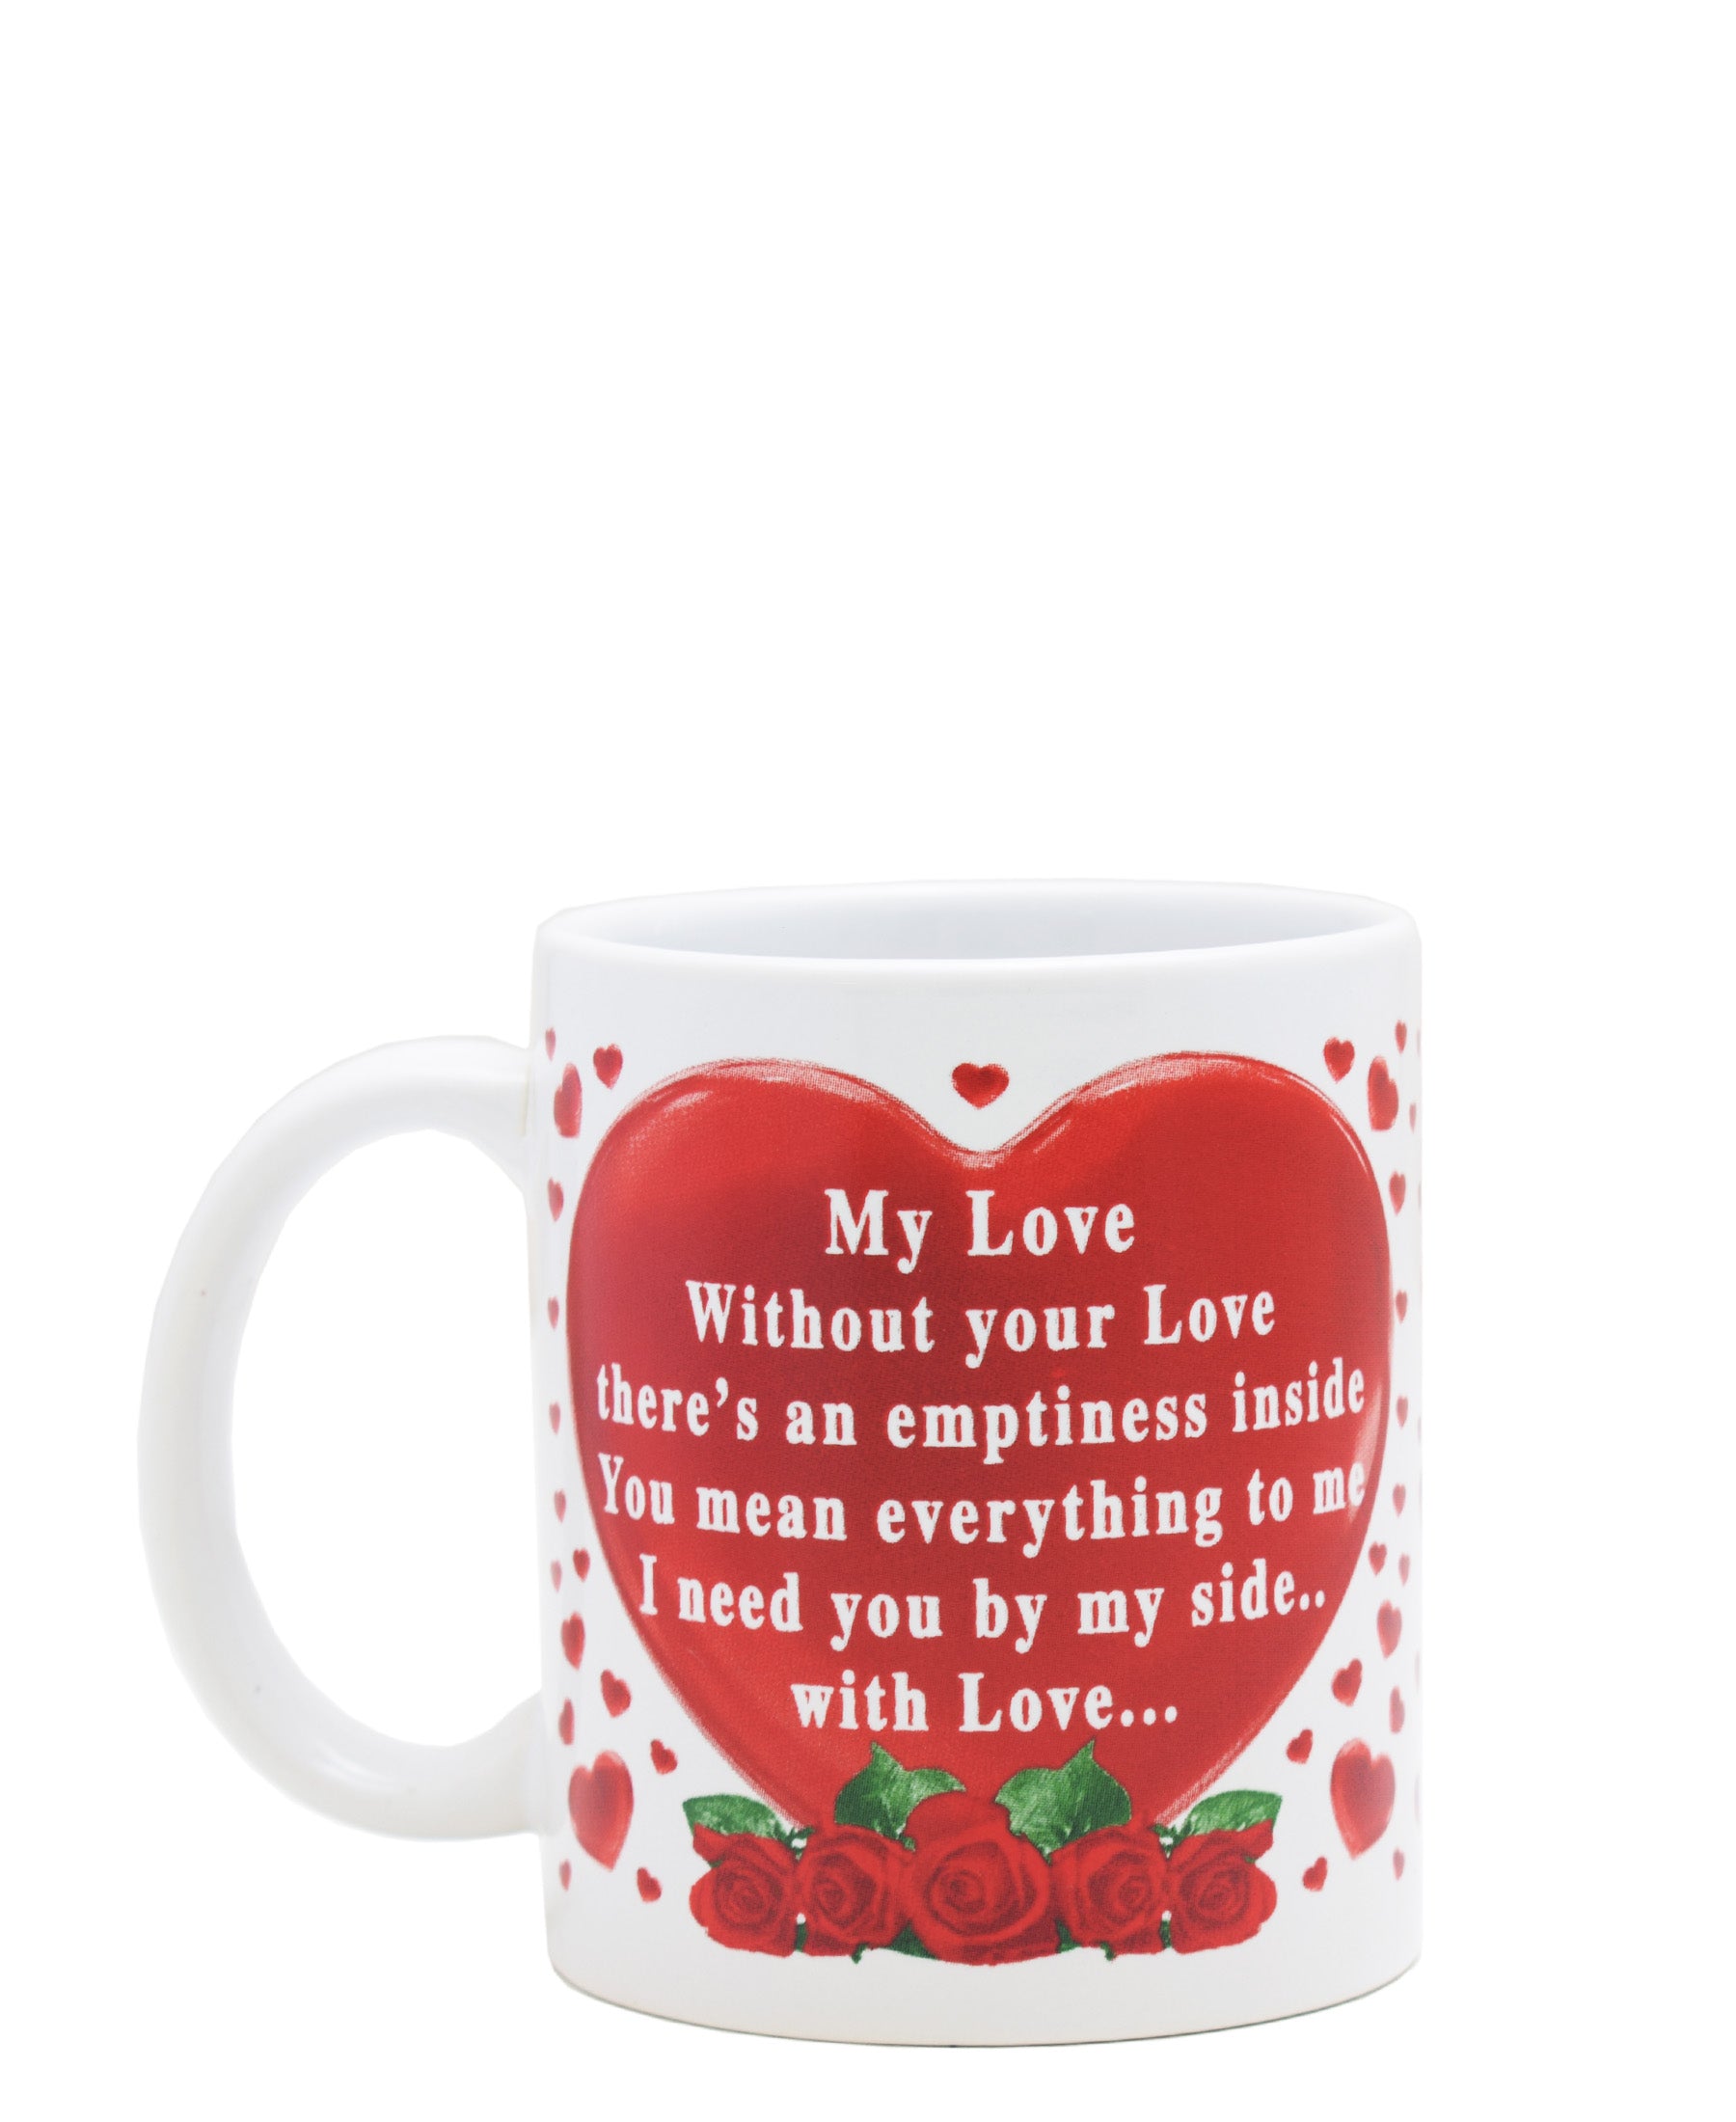 Lovers Design 440ml Love Mug - White & Red